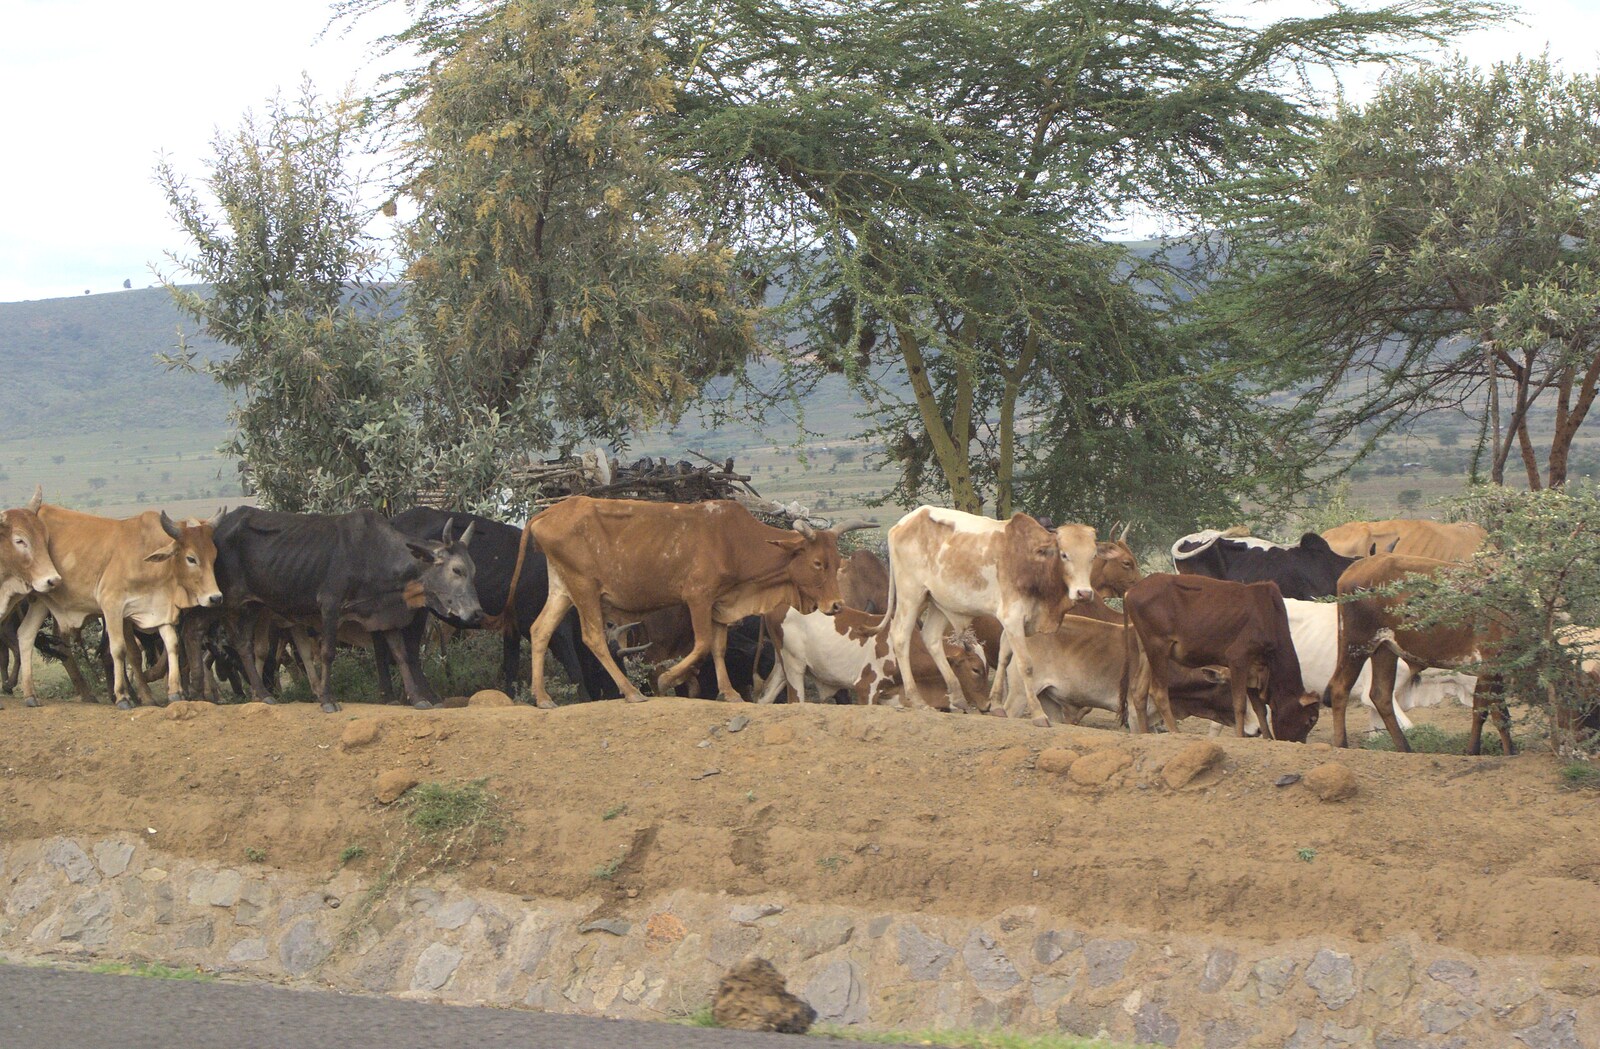 Maasai cattle from Nairobi and the Road to Maasai Mara, Kenya, Africa - 1st November 2010